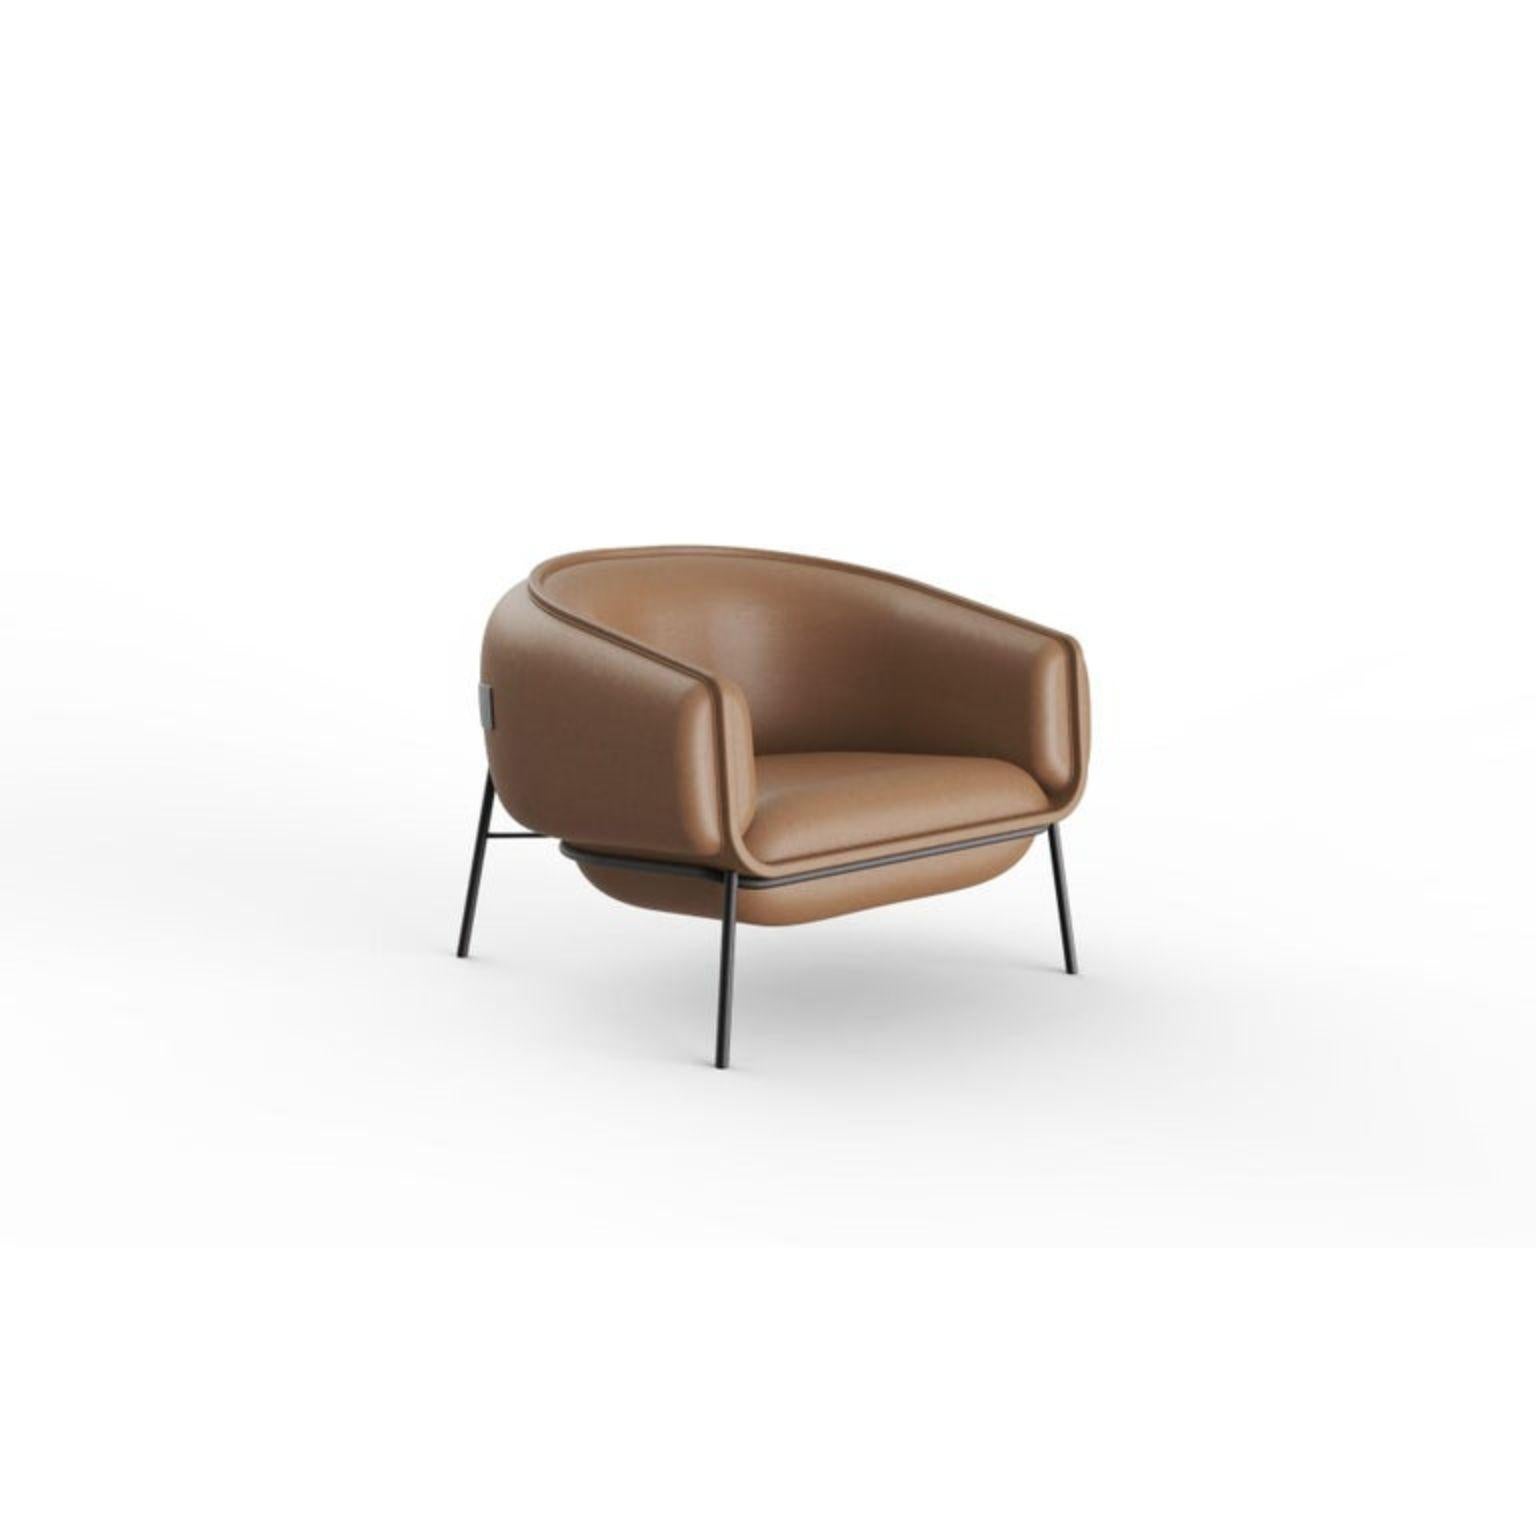 Contemporary Leder Blop Sessel 
Abmessungen: T 78 x B 80 x H 75 cm
Sitzhöhe : 44 cm
MATERIALIEN : Oberteil: Stoff oder Leder
 Füße: lackiertes Metall - wählen Sie aus Metallmustern




